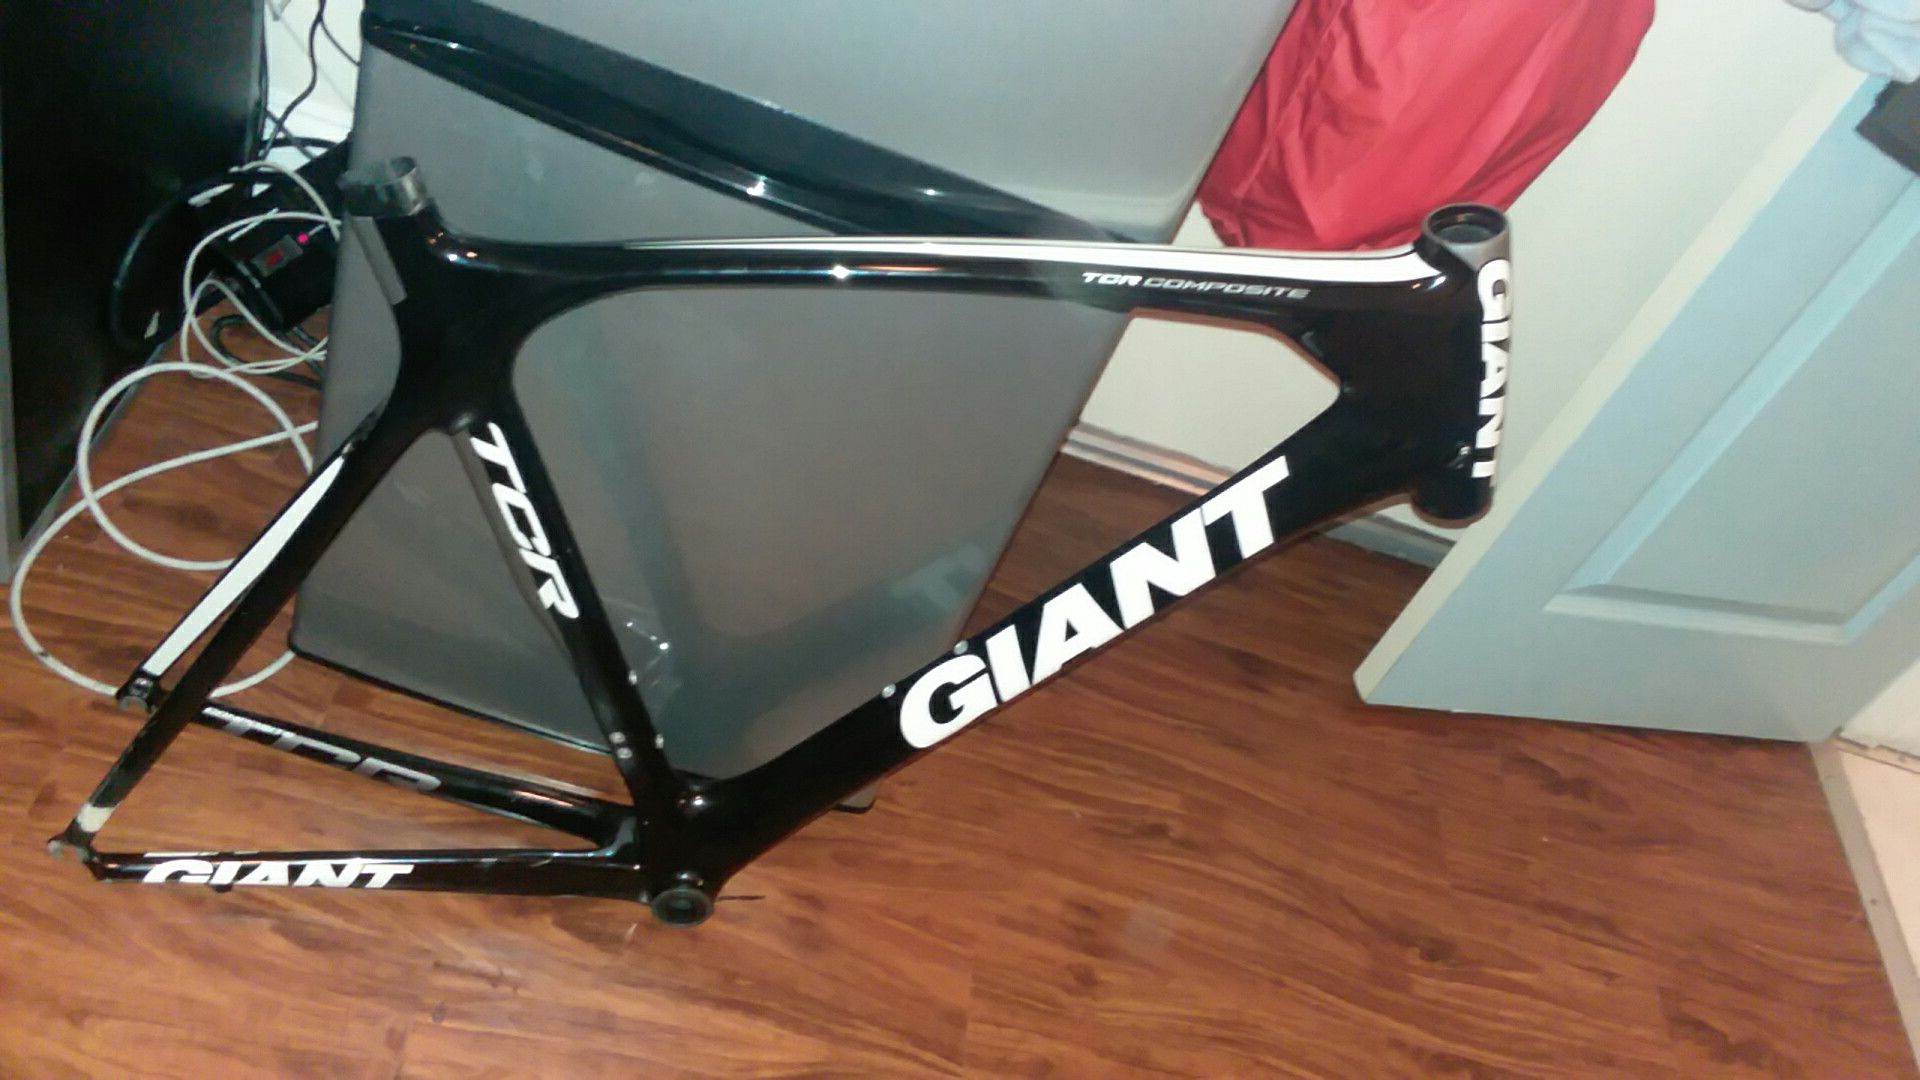 Tcr giant carbon fiber bike frame